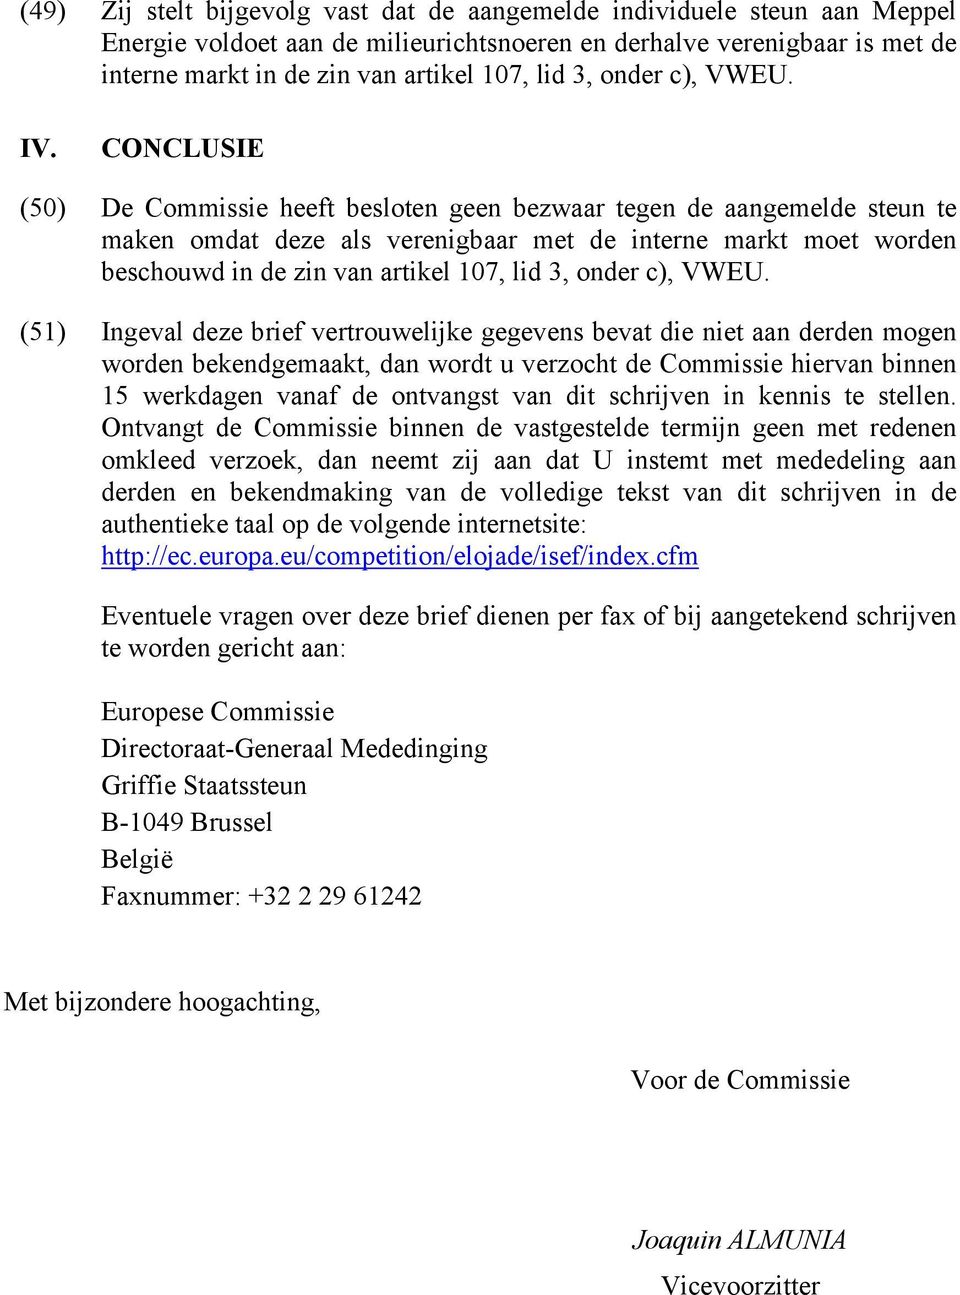 CONCLUSIE (50) De Commissie heeft besloten geen bezwaar tegen de aangemelde steun te maken omdat deze als verenigbaar met de interne markt moet worden beschouwd in de zin van artikel 107, lid 3,